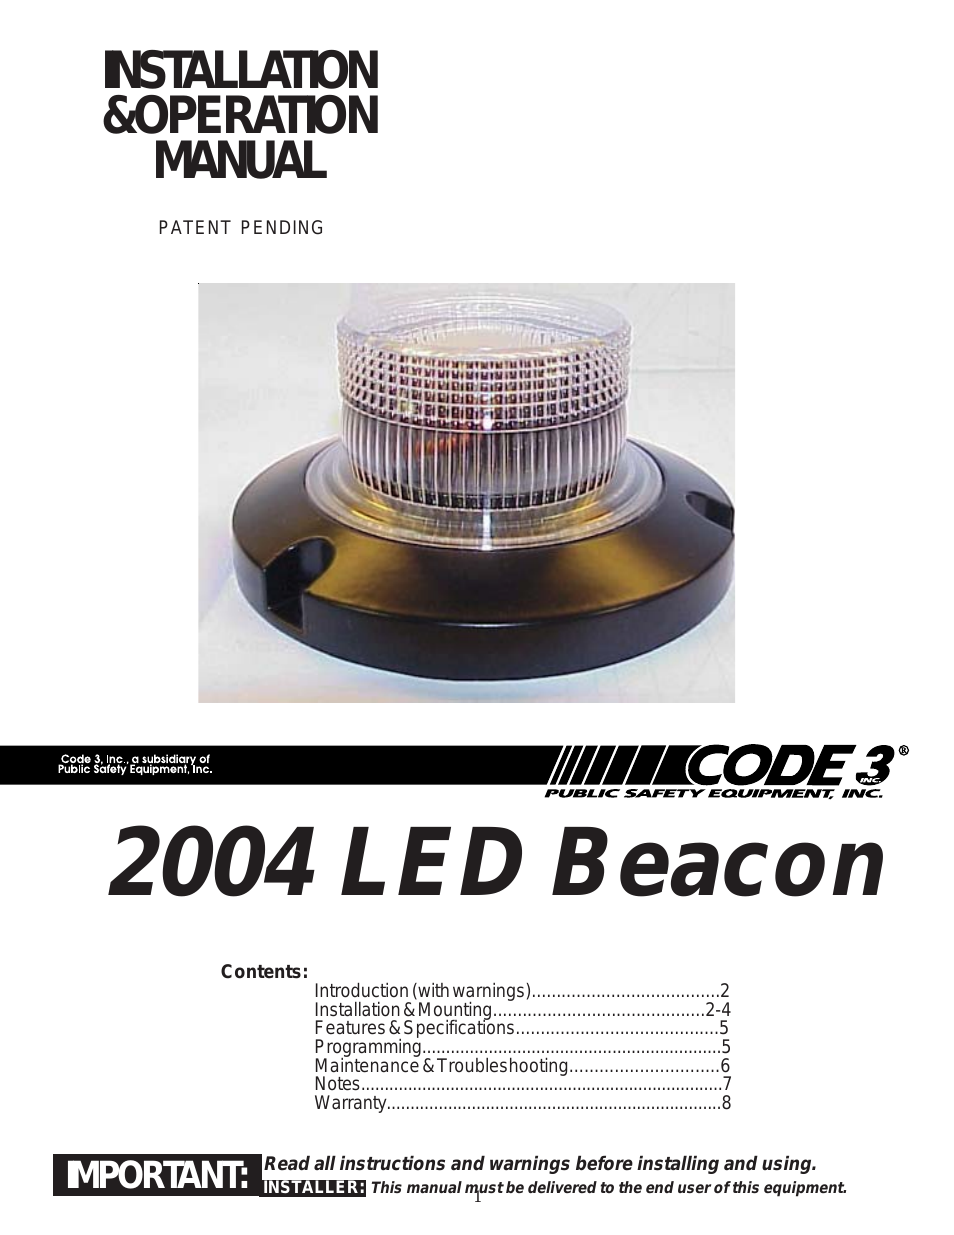 2004 LED Series Beacon